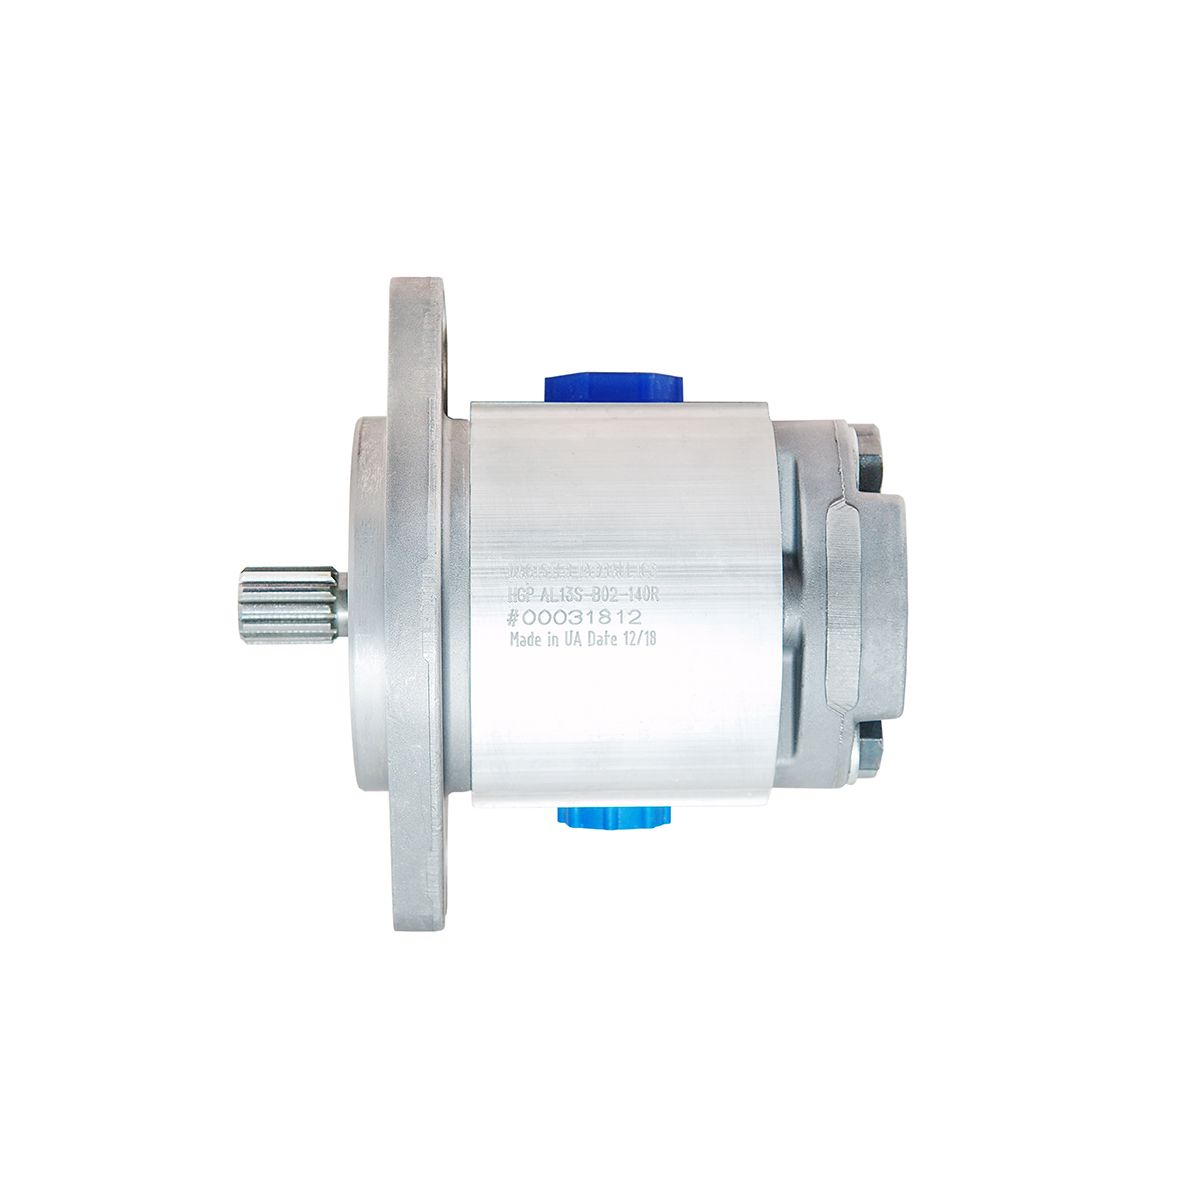 1.40 CID hydraulic gear pump, 13 tooth spline shaft clockwise gear pump | Magister Hydraulics